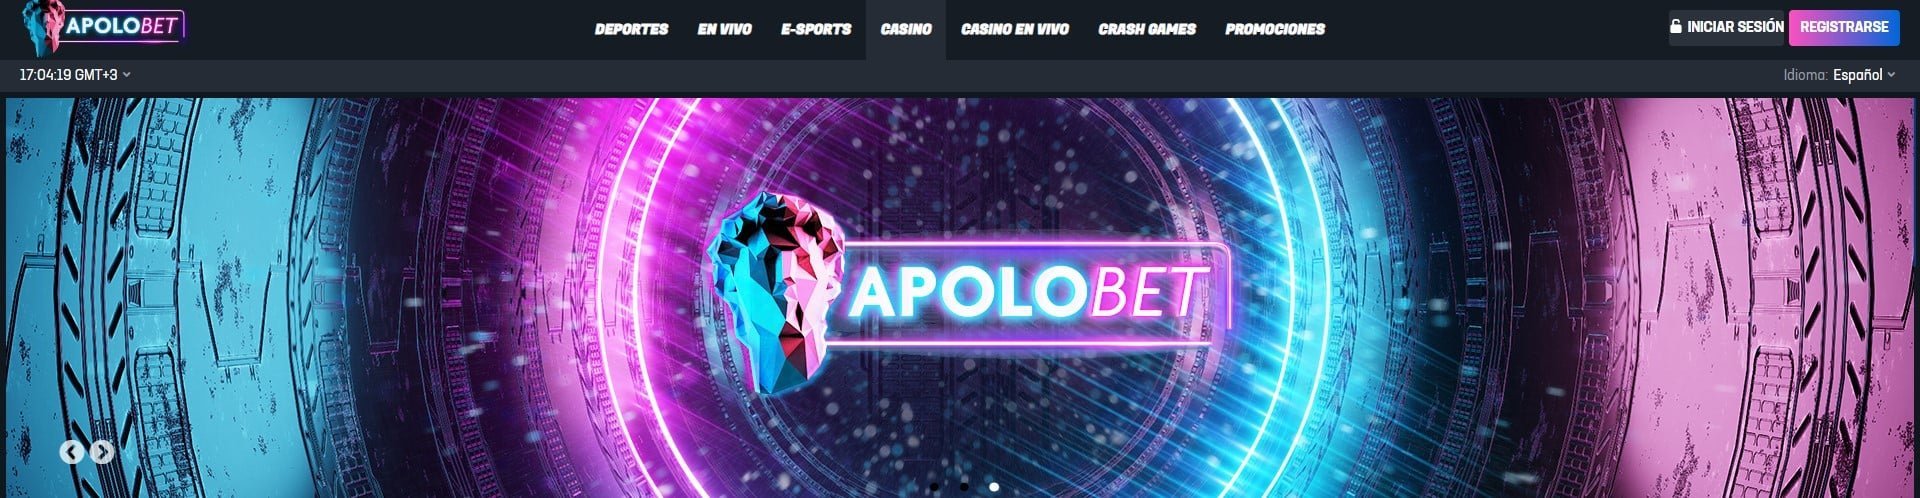 Apolobet casino logotipo en la página principal